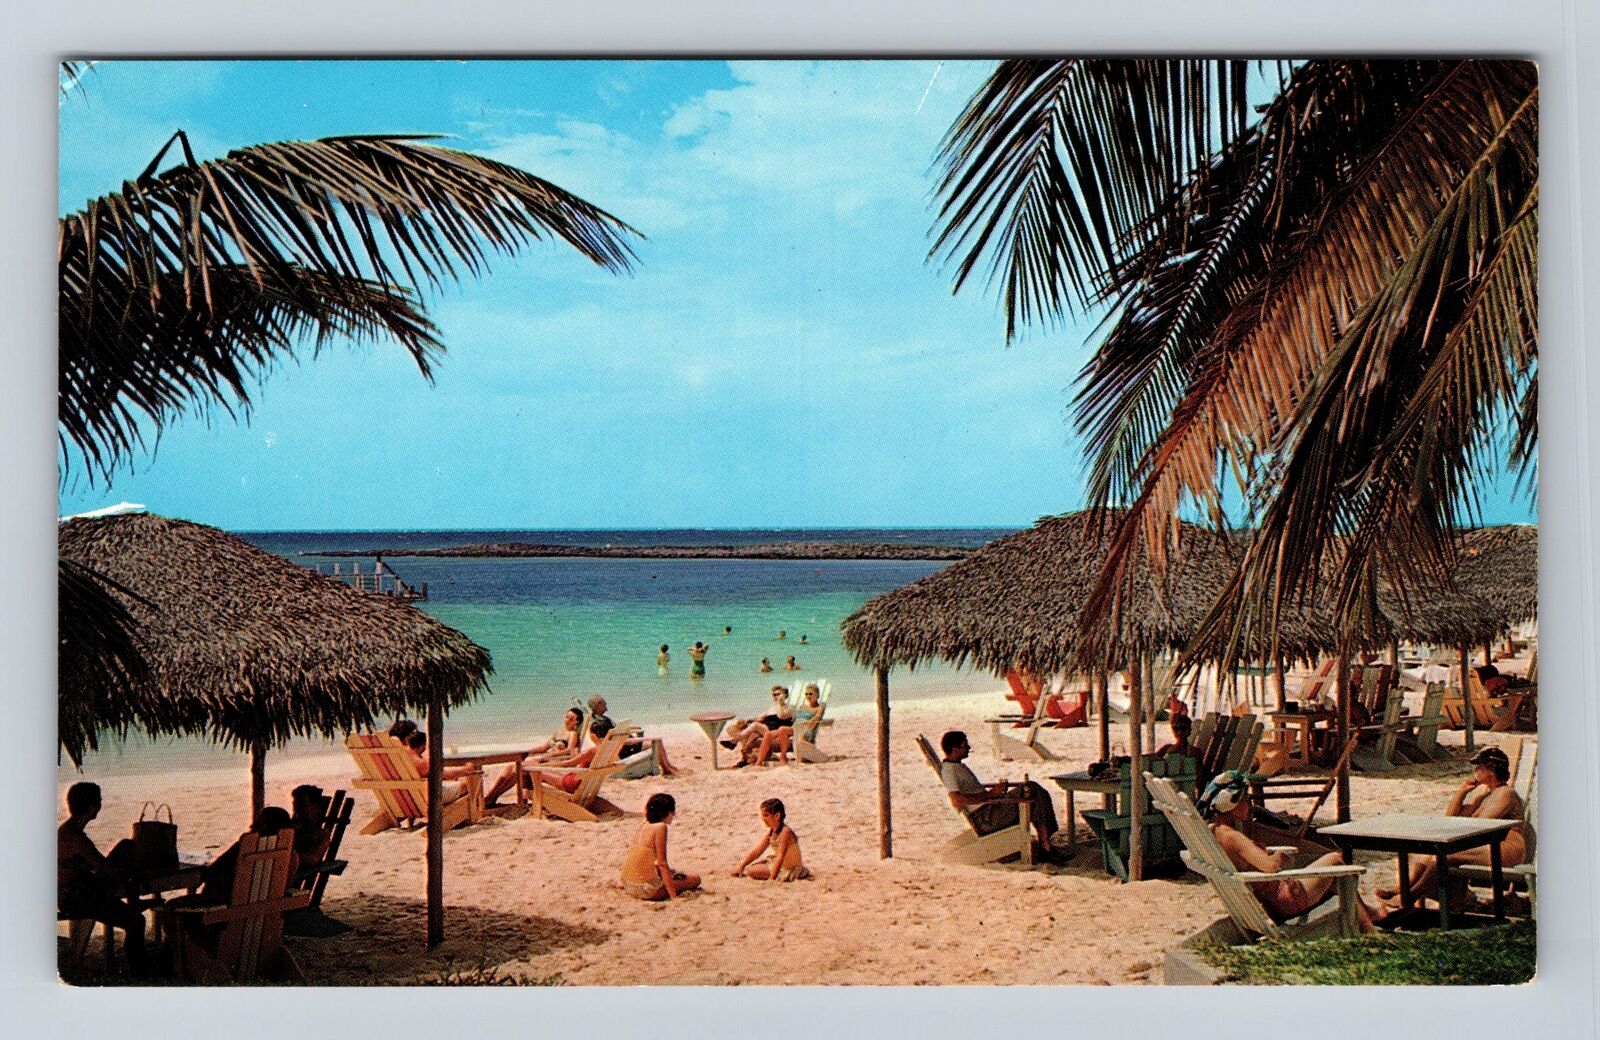 Nassau-Bahamas, Paradise Beach, Antique, Vintage Souvenir Postcard